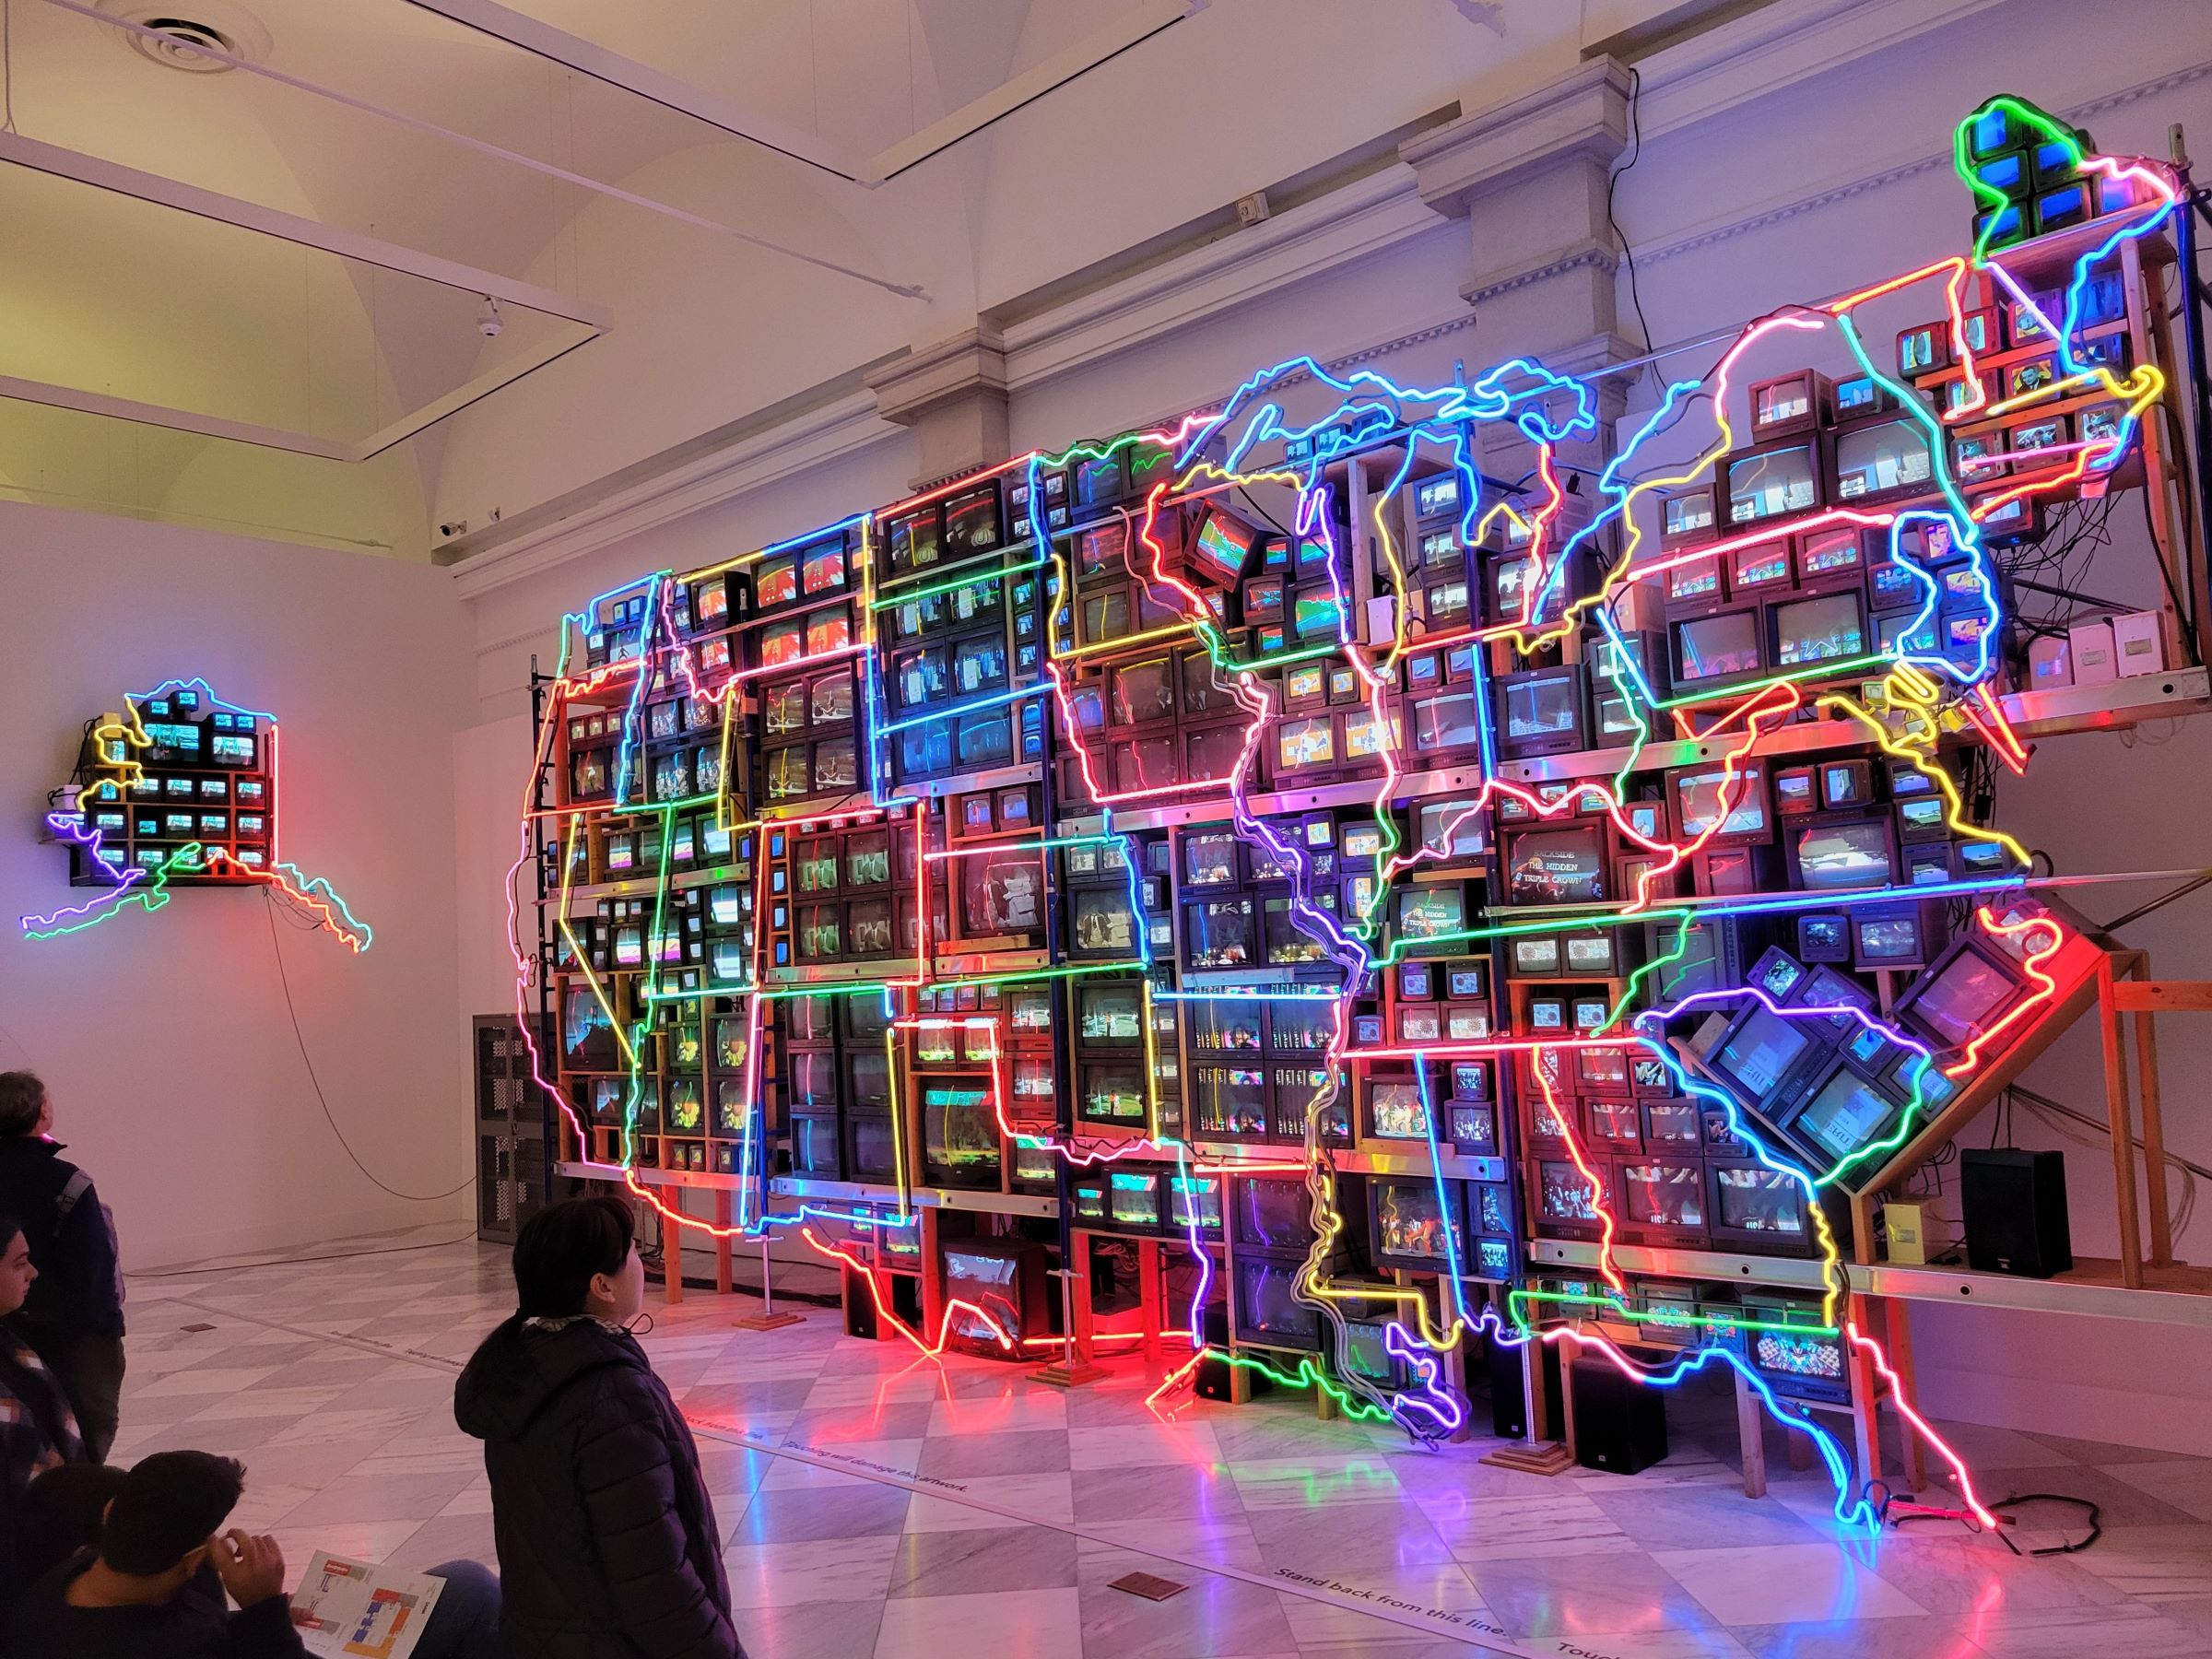 초상화 갤러리 여러 인물들 및 미국미술관 대표적 현대미술 작품인 백남준의 "Electronic Superhighway"